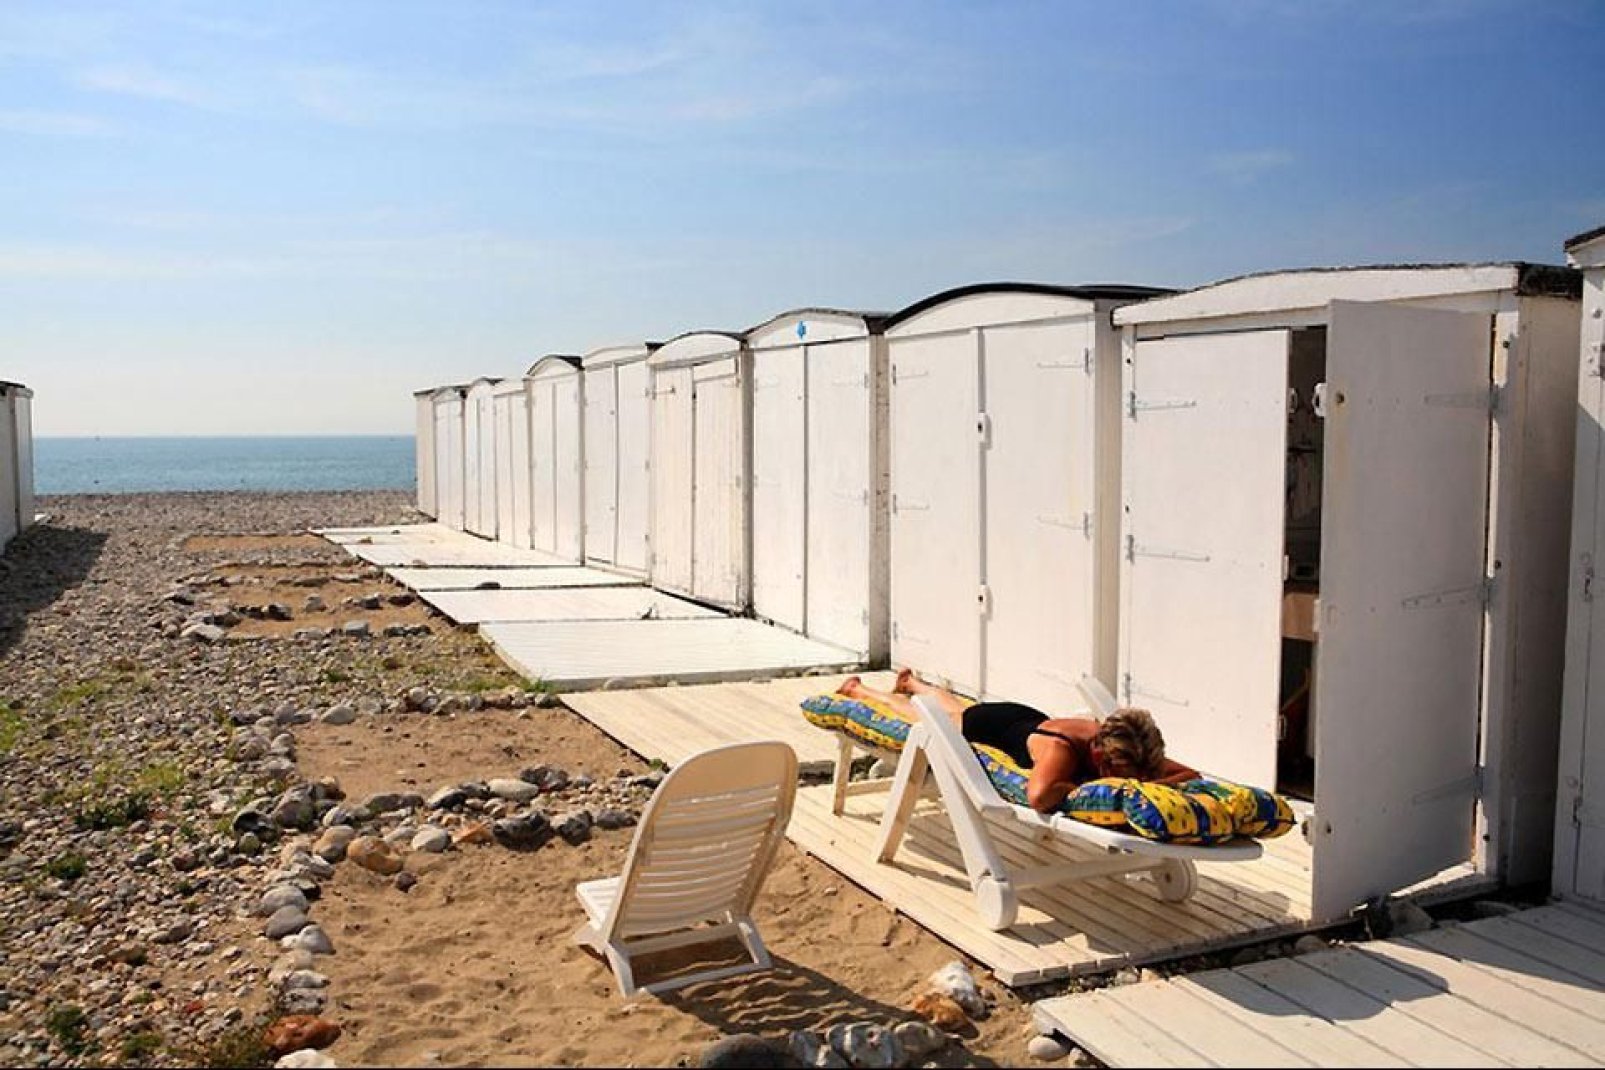 Las cabañas de la playa de Le Havre han contribuido a forjar la reputación de la ciudad. Desde su creación, han inspirado a numerosos artistas.